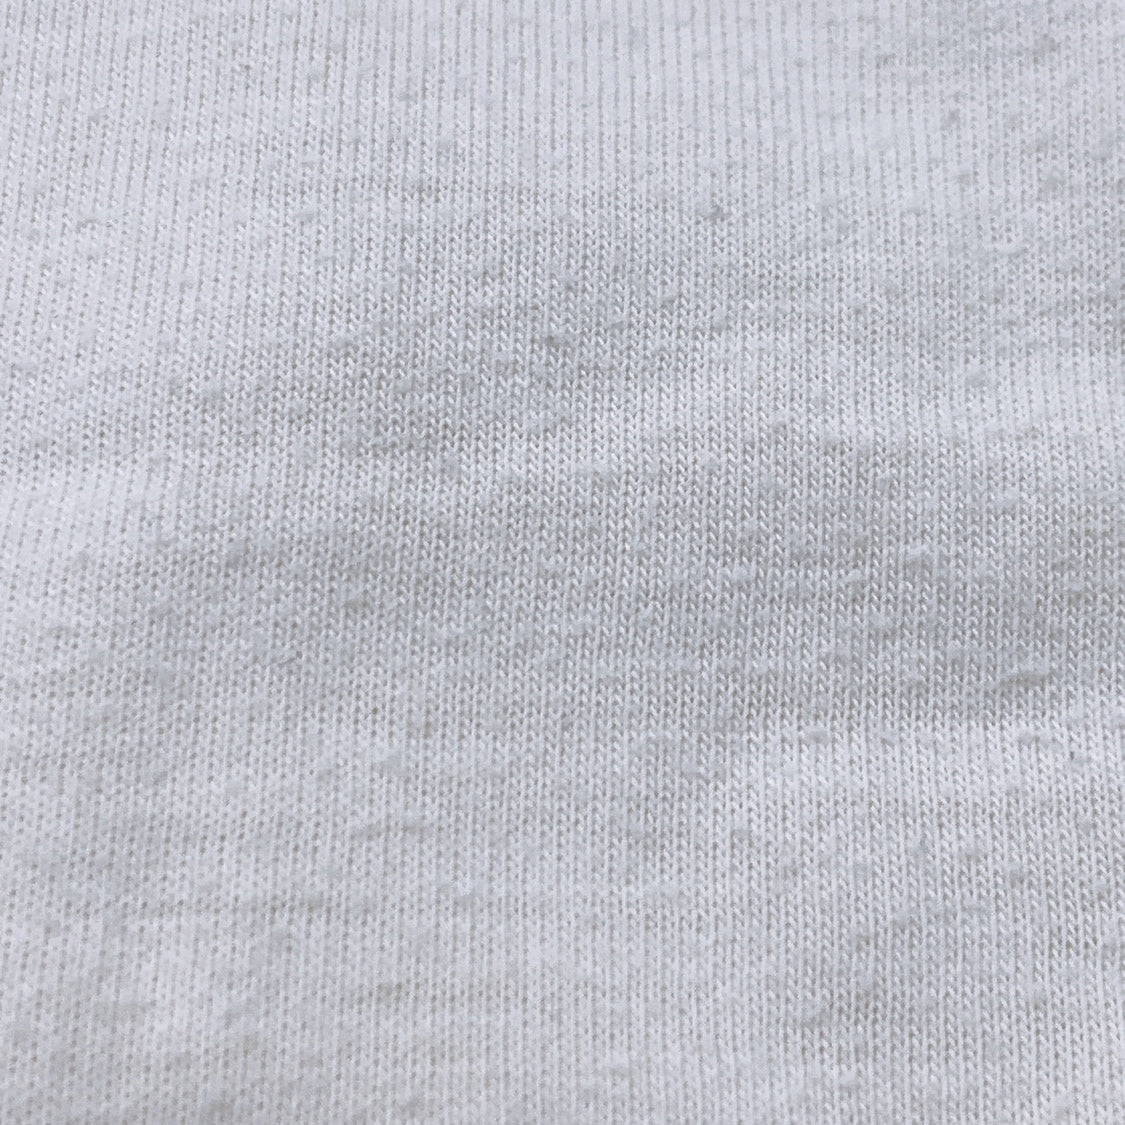 メンズS AIGLE 半袖Tシャツ 無地 オフホワイト ポリエステル コットン カジュアル トップス シンプル エーグル 【14749】